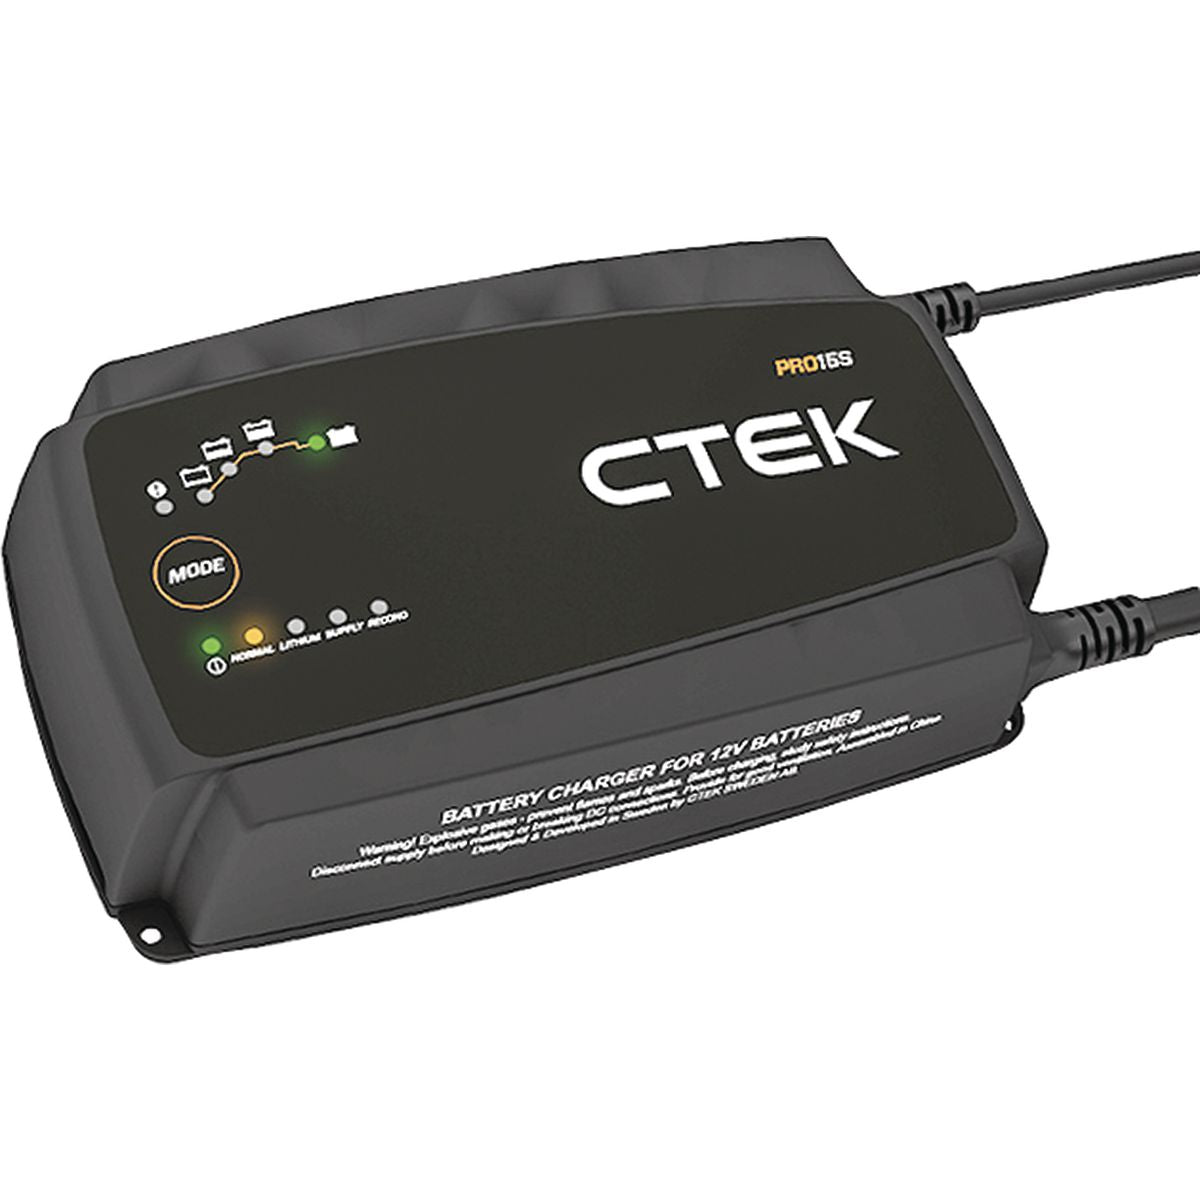 CTEK MXS 5.0 TEST & CHARGE 12V 5A CTEK 56-308 mxs5.0 test&charge